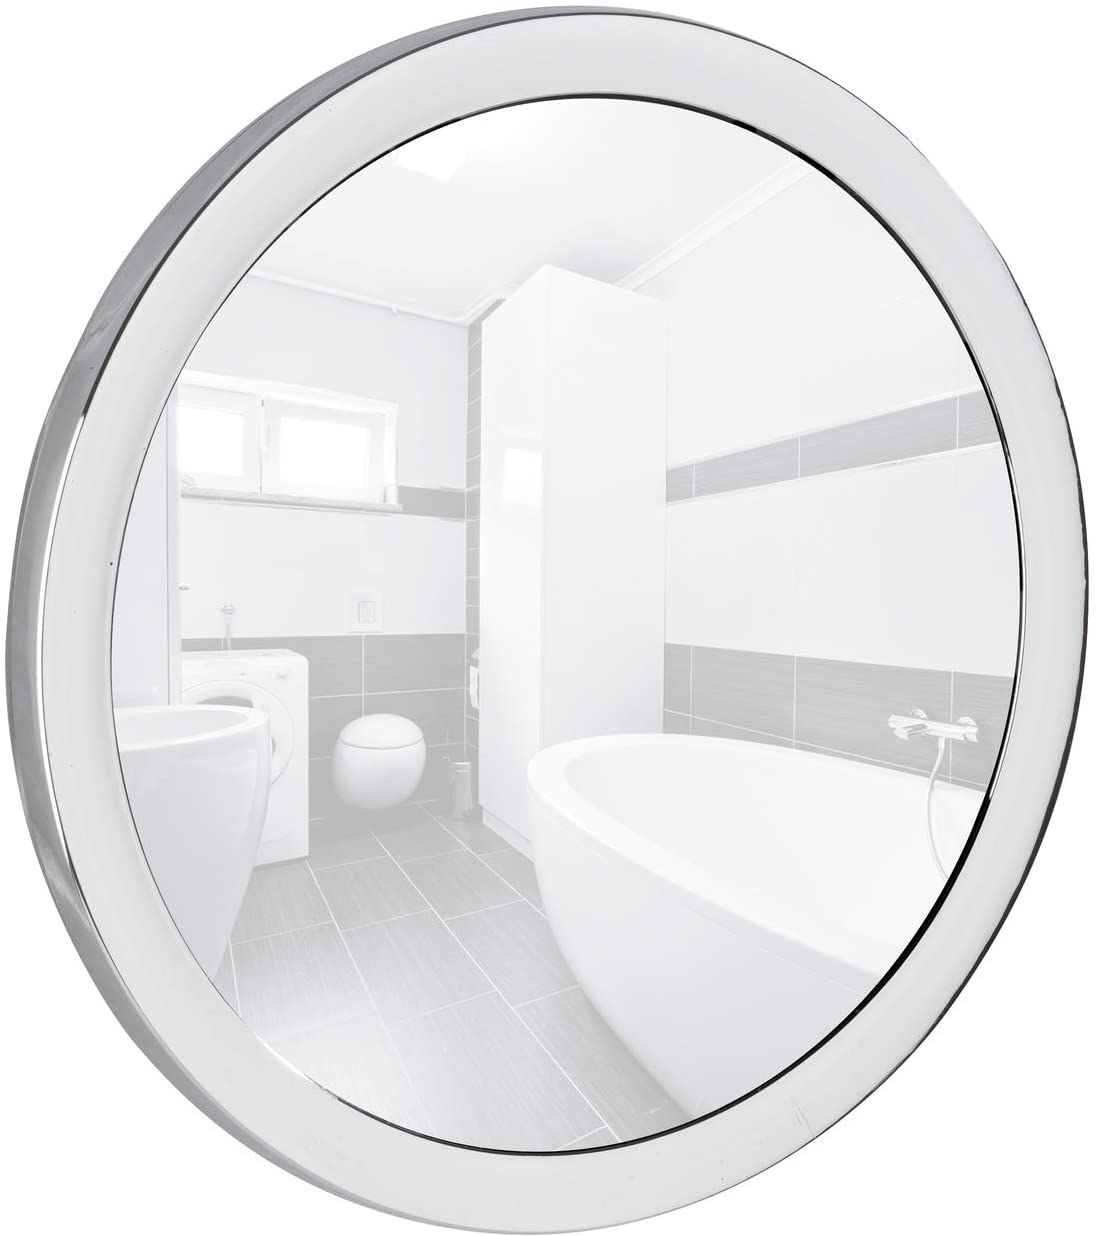 Kosmetik-Wandspiegel Pistoia Chrom - 5-fache Vergrößerung, mit Saugnapfhalterung, Spiegelfläche ø 12,5 cm, Kunststoff, 14.5 x 3.5 cm, Chrom